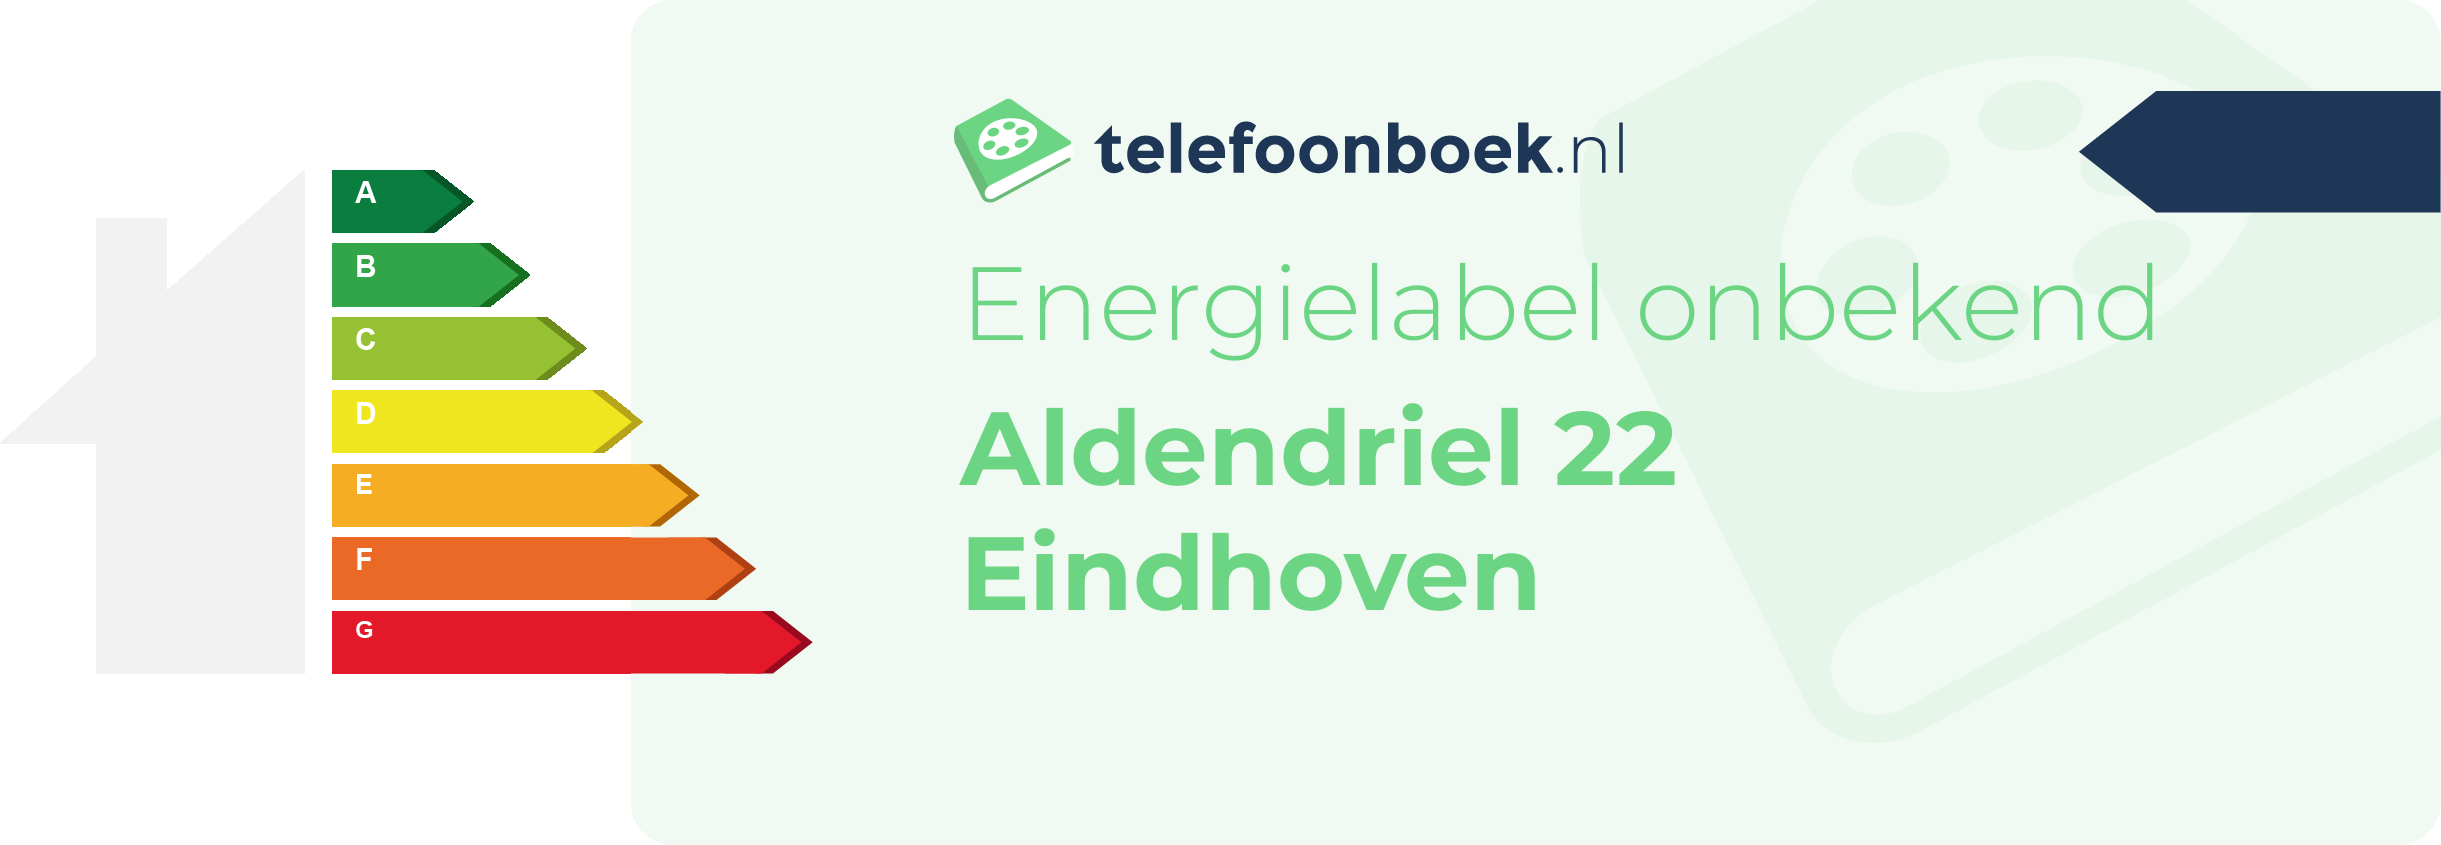 Energielabel Aldendriel 22 Eindhoven